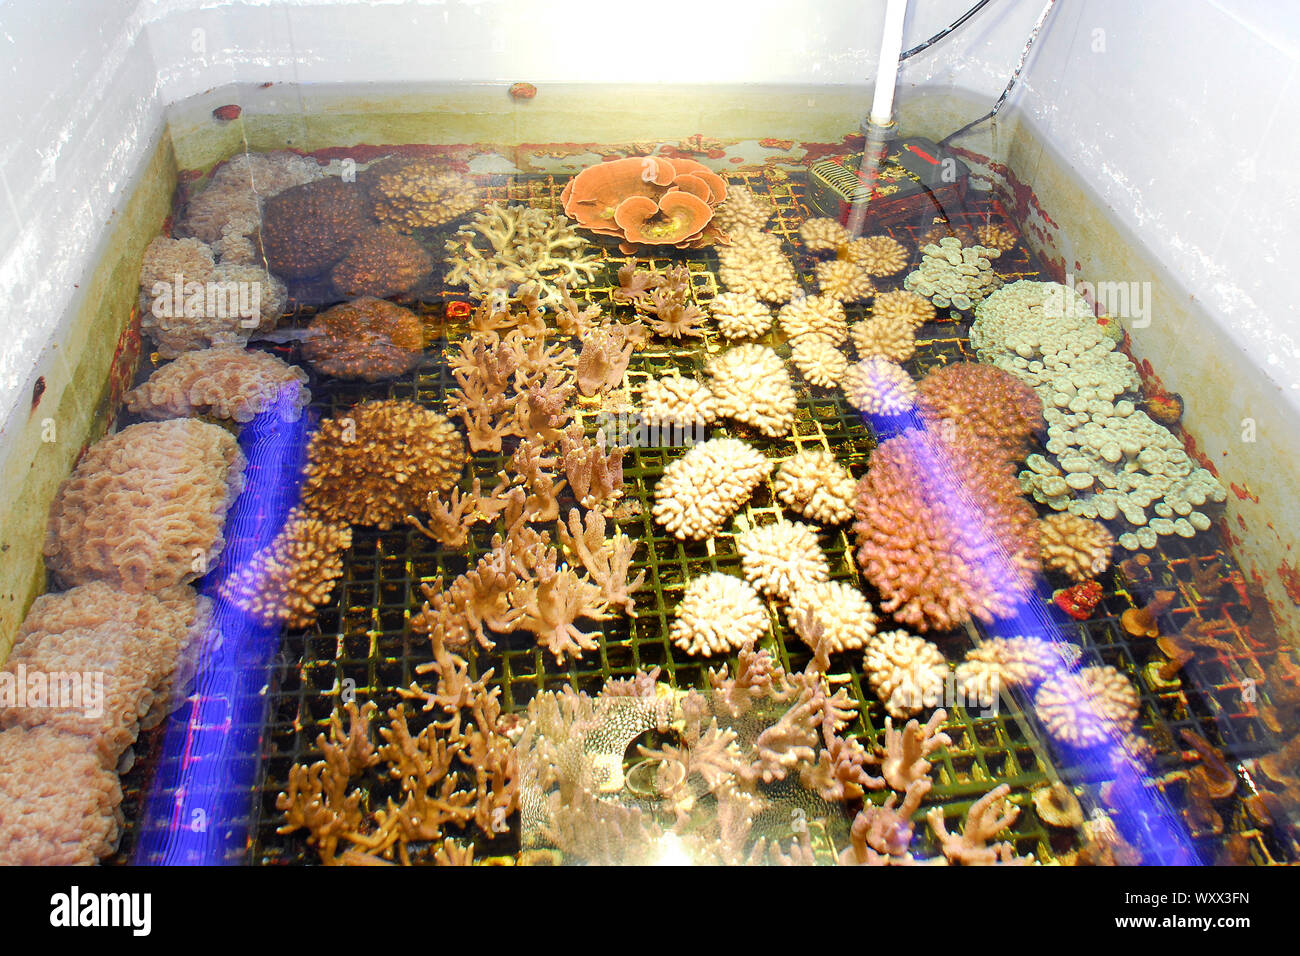 Propagación del coral, acuario marino, Cap d'Agde, Francia Foto de stock